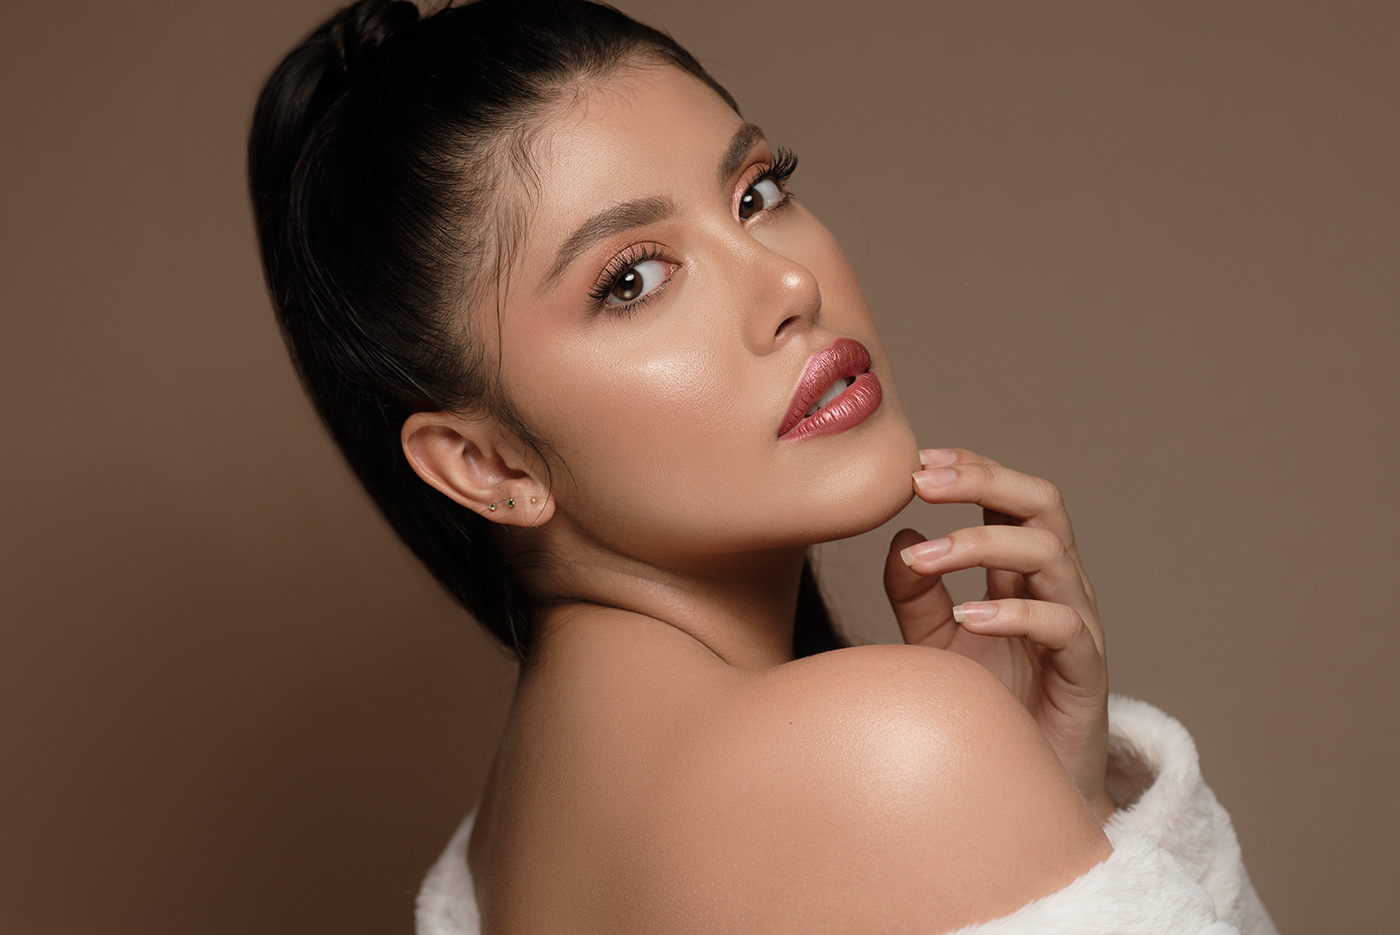 beauty brands colombia makeup Nikon retouch retoucher